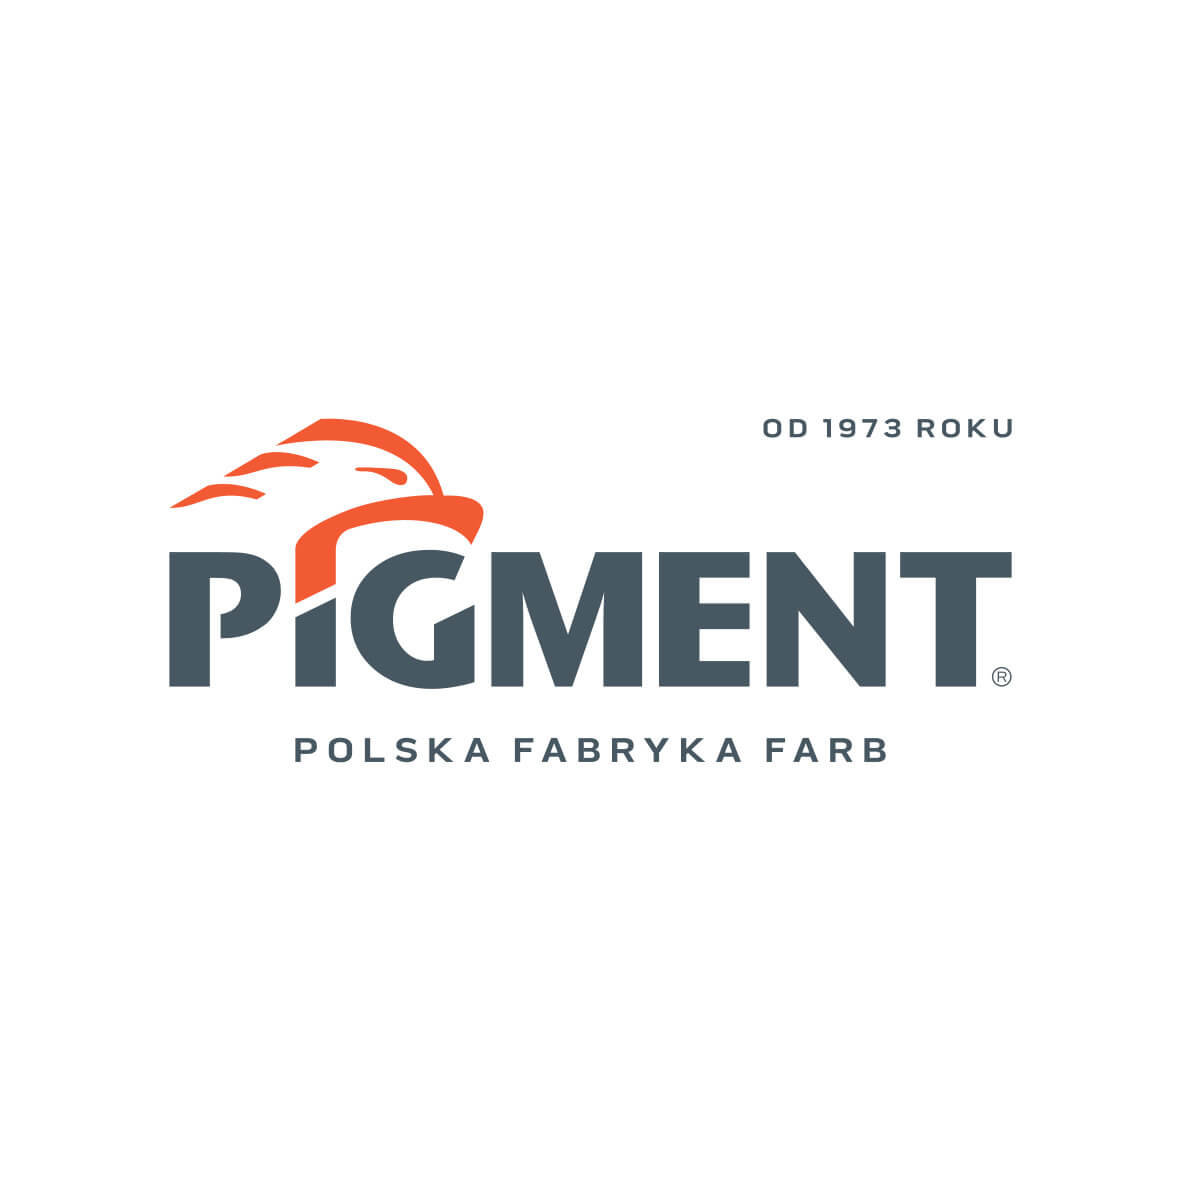 Pigment – Polska Fabryka Farb